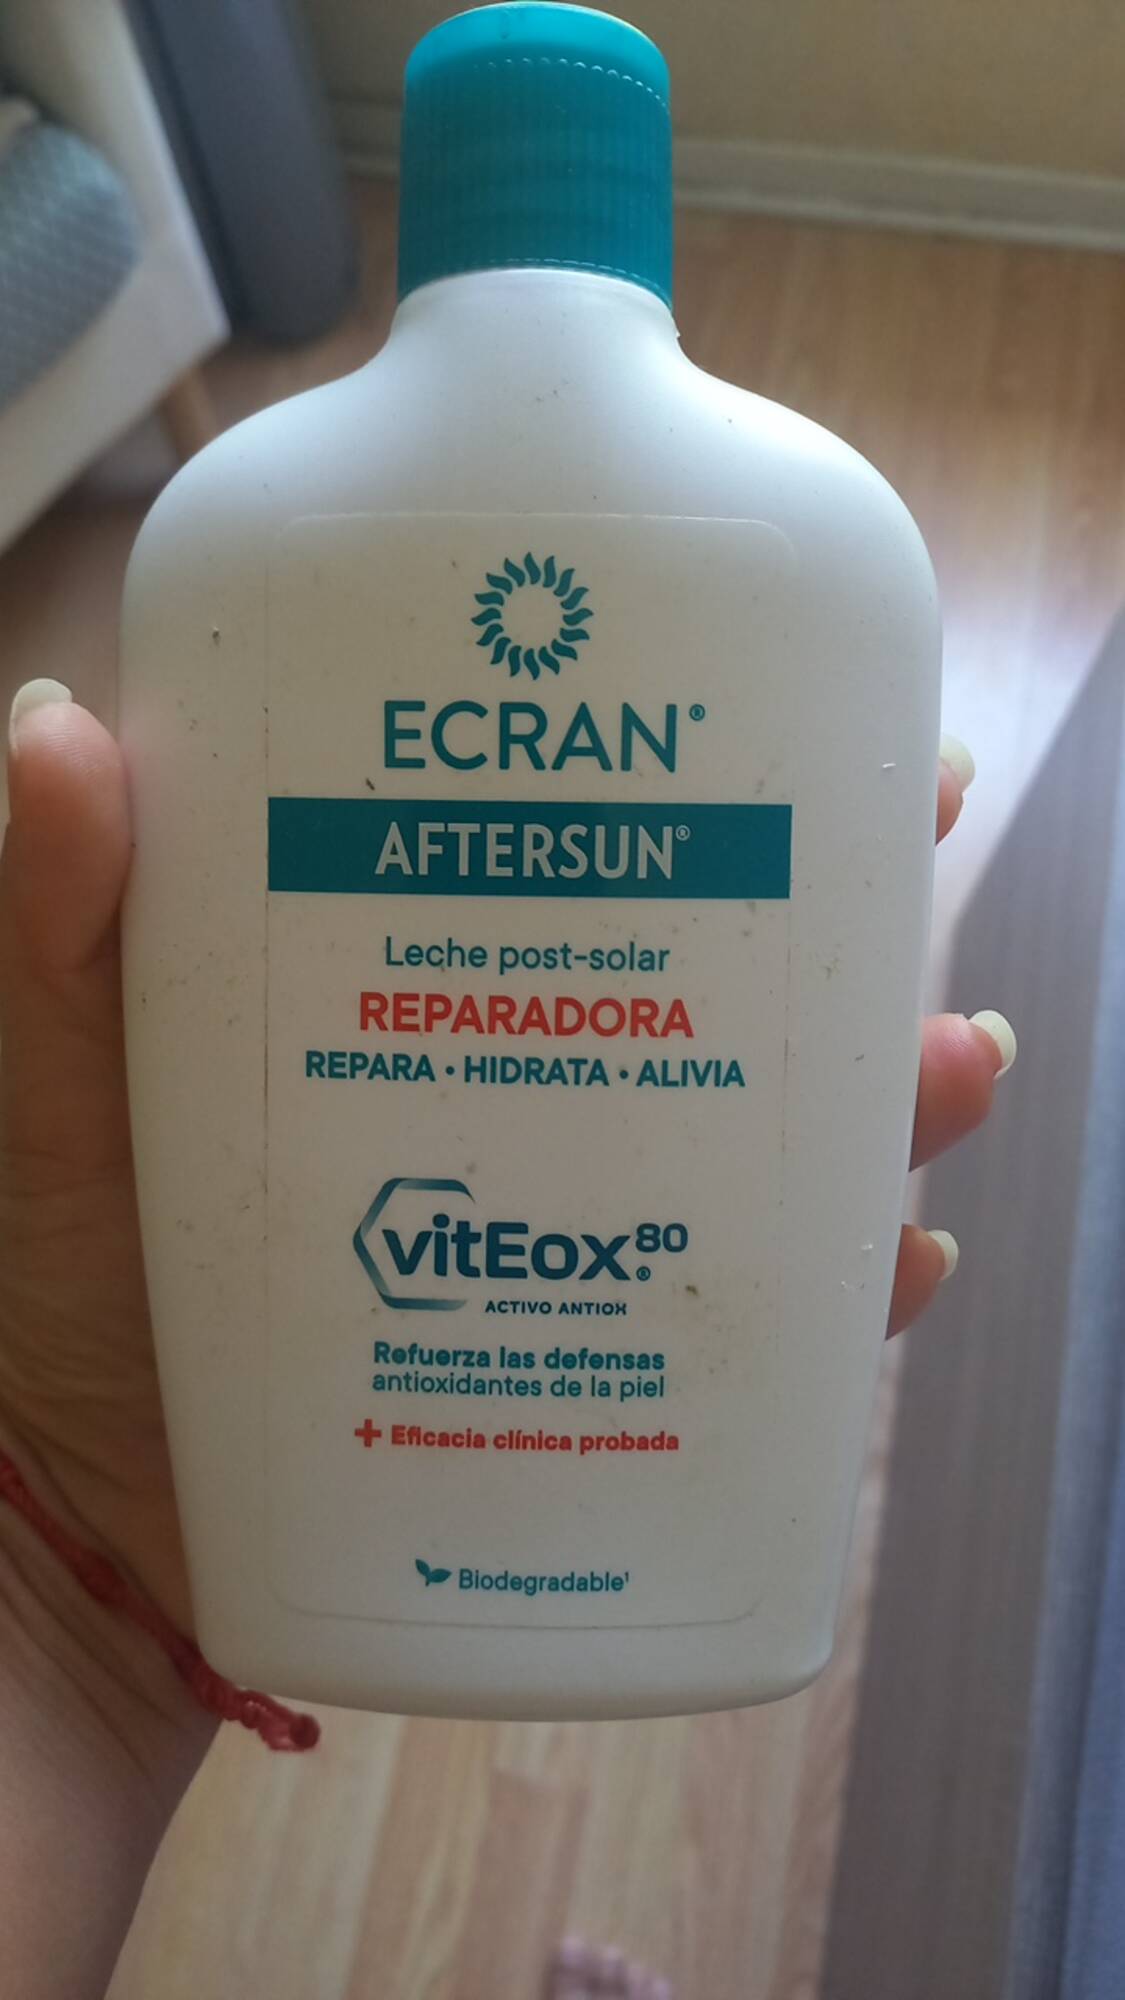 ECRAN - Aftersun Viteox 80  